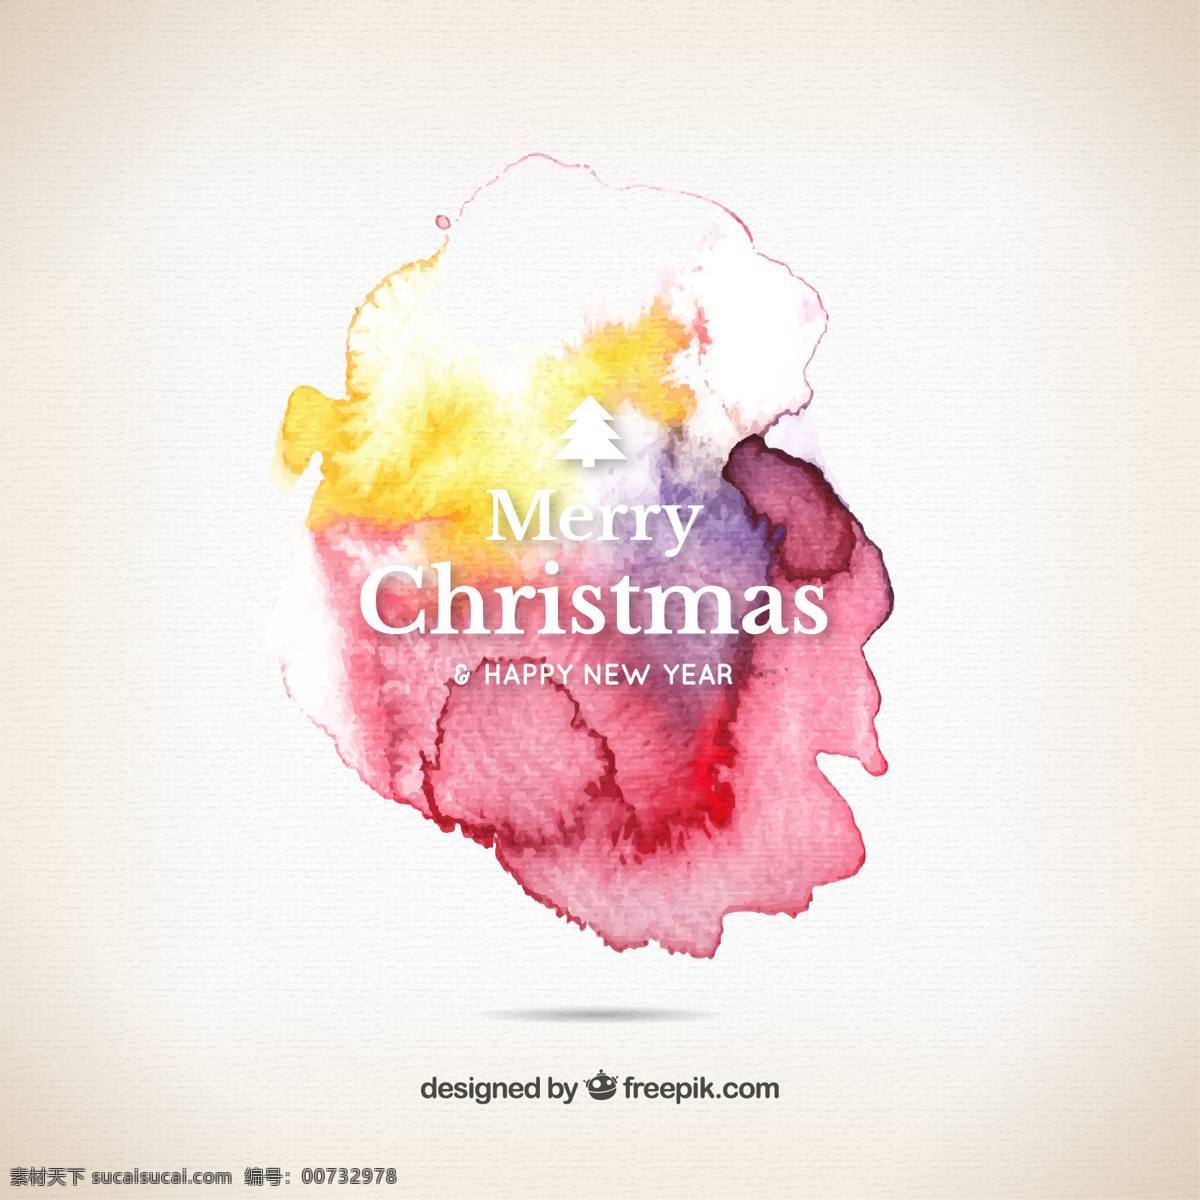 中文 摘要 水彩画 圣诞 祝福语 圣诞节 水彩 一方面 圣诞快乐 冬天 油漆 快乐 圣诞卡 庆祝 节日 节日快乐 问候问候 季节 祝福 十二月 白色